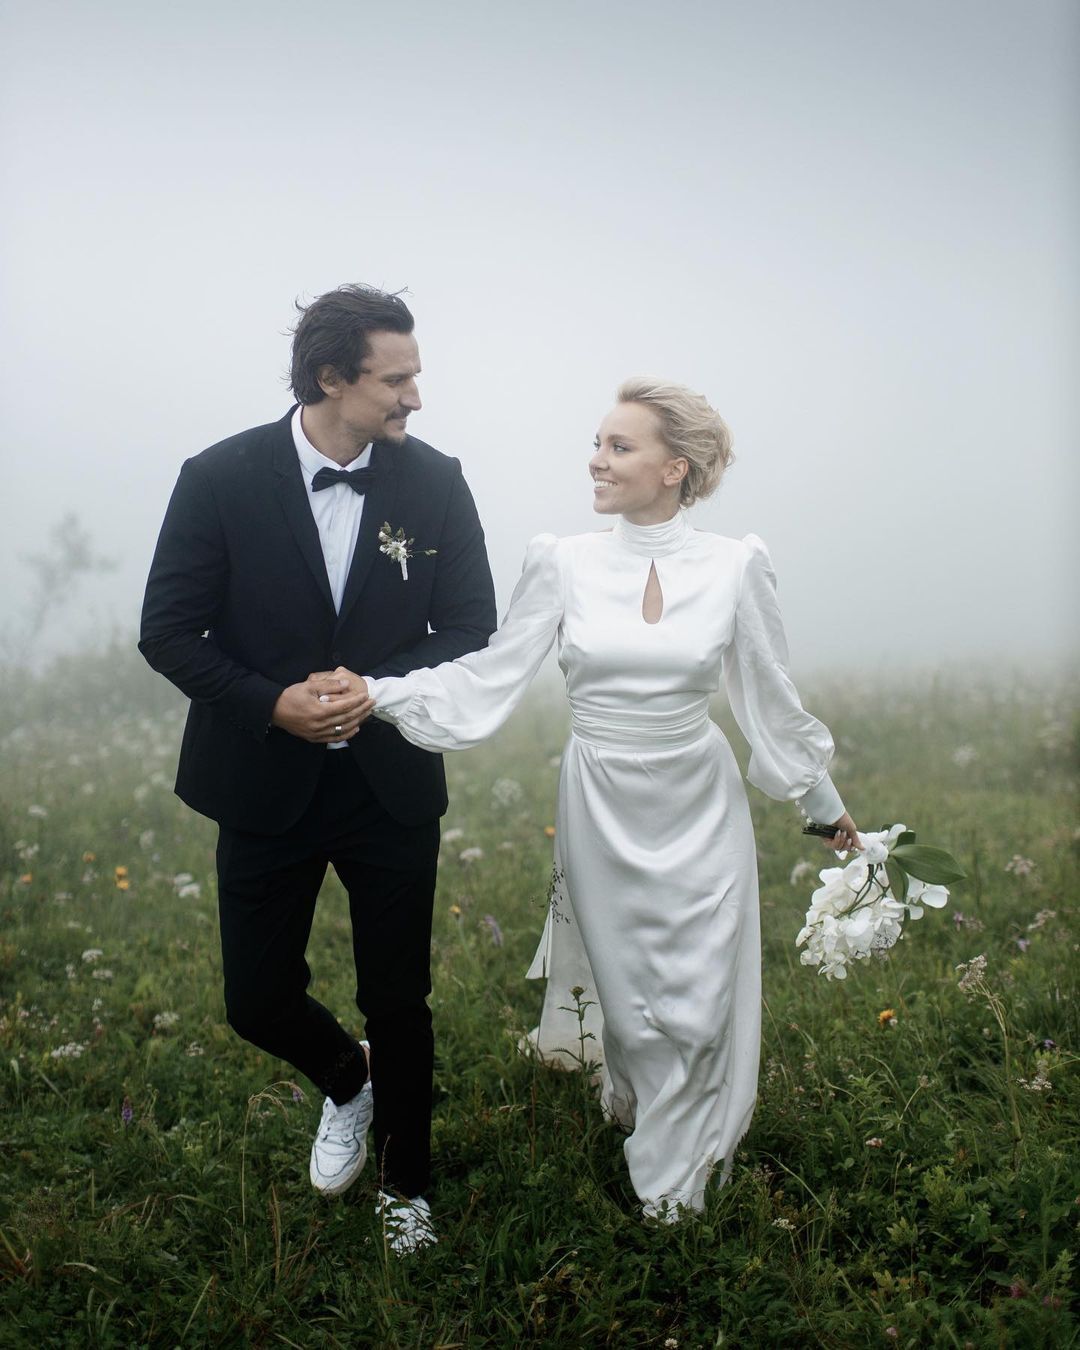 Тарас Цымбалюк и Тина Антоненко поженились в 2021 году